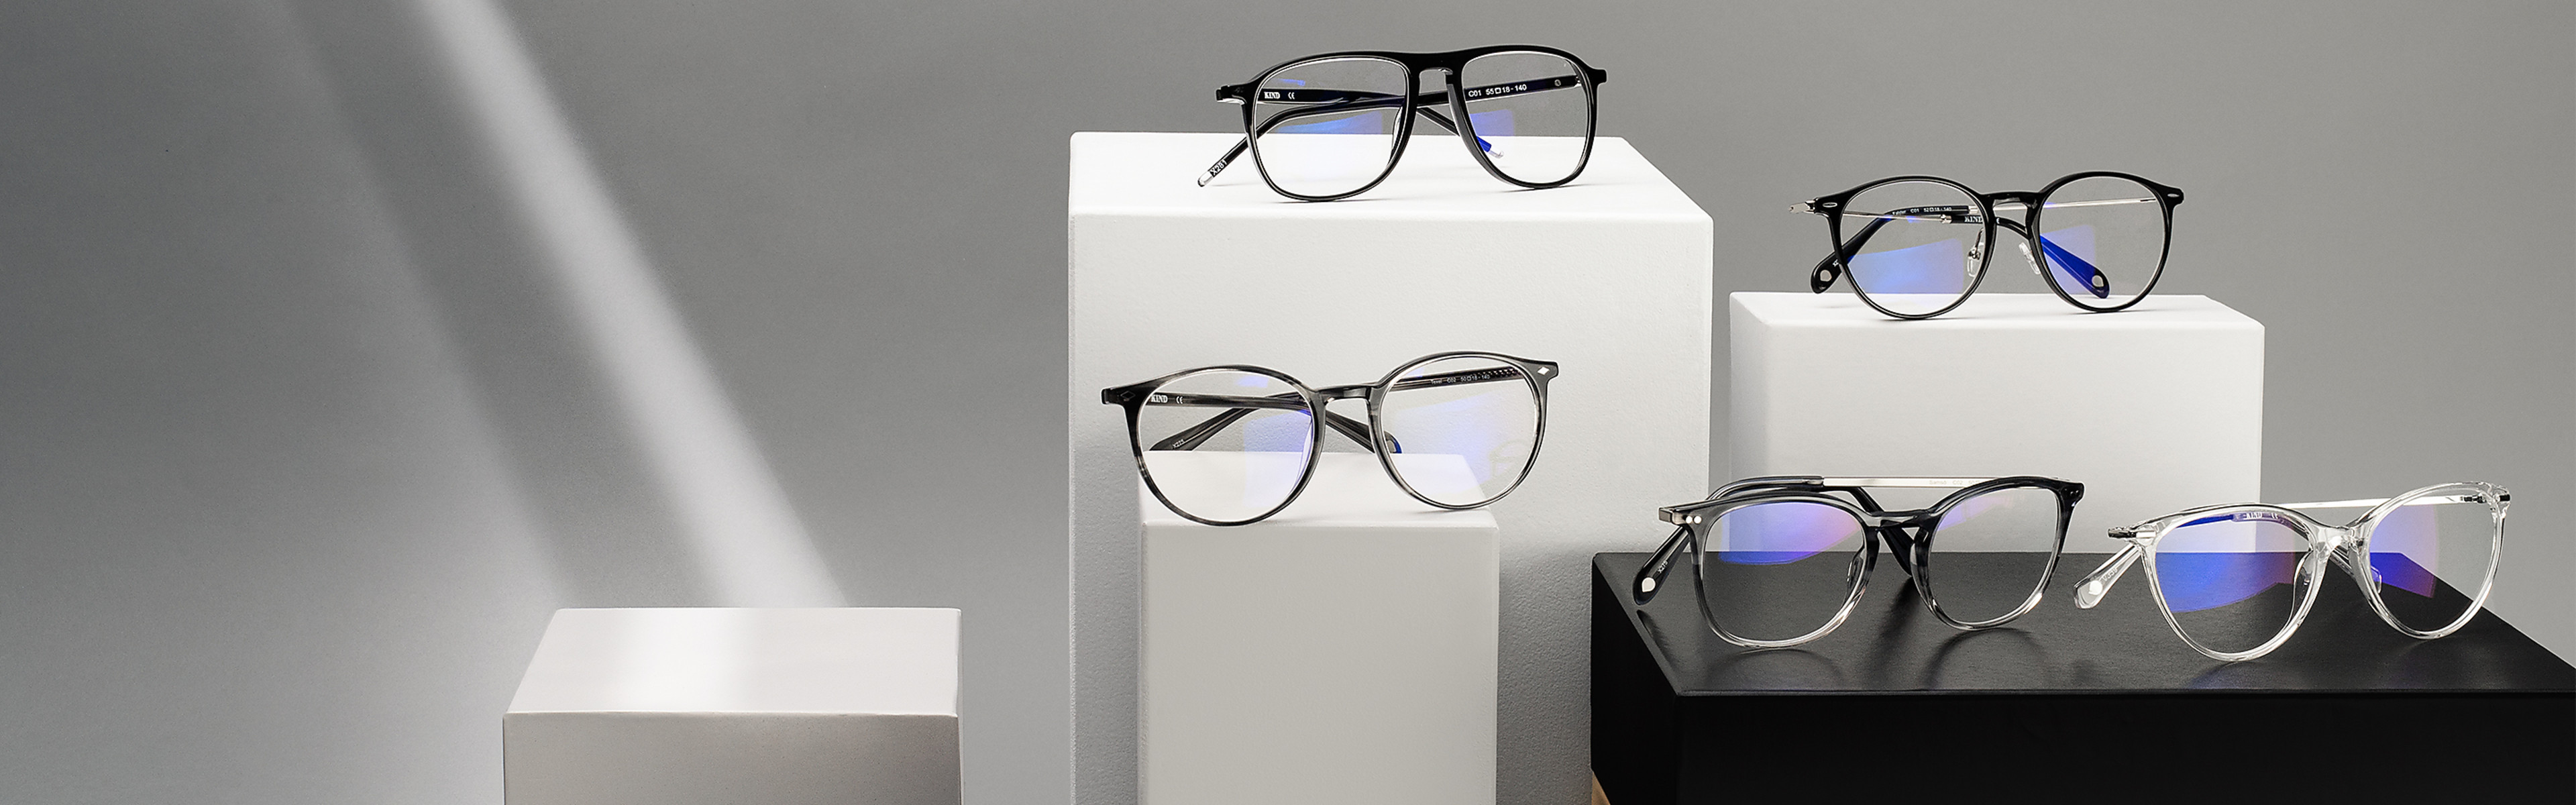 Blaulichtfilter-Brillen: Die Lösung für den Bildschirm